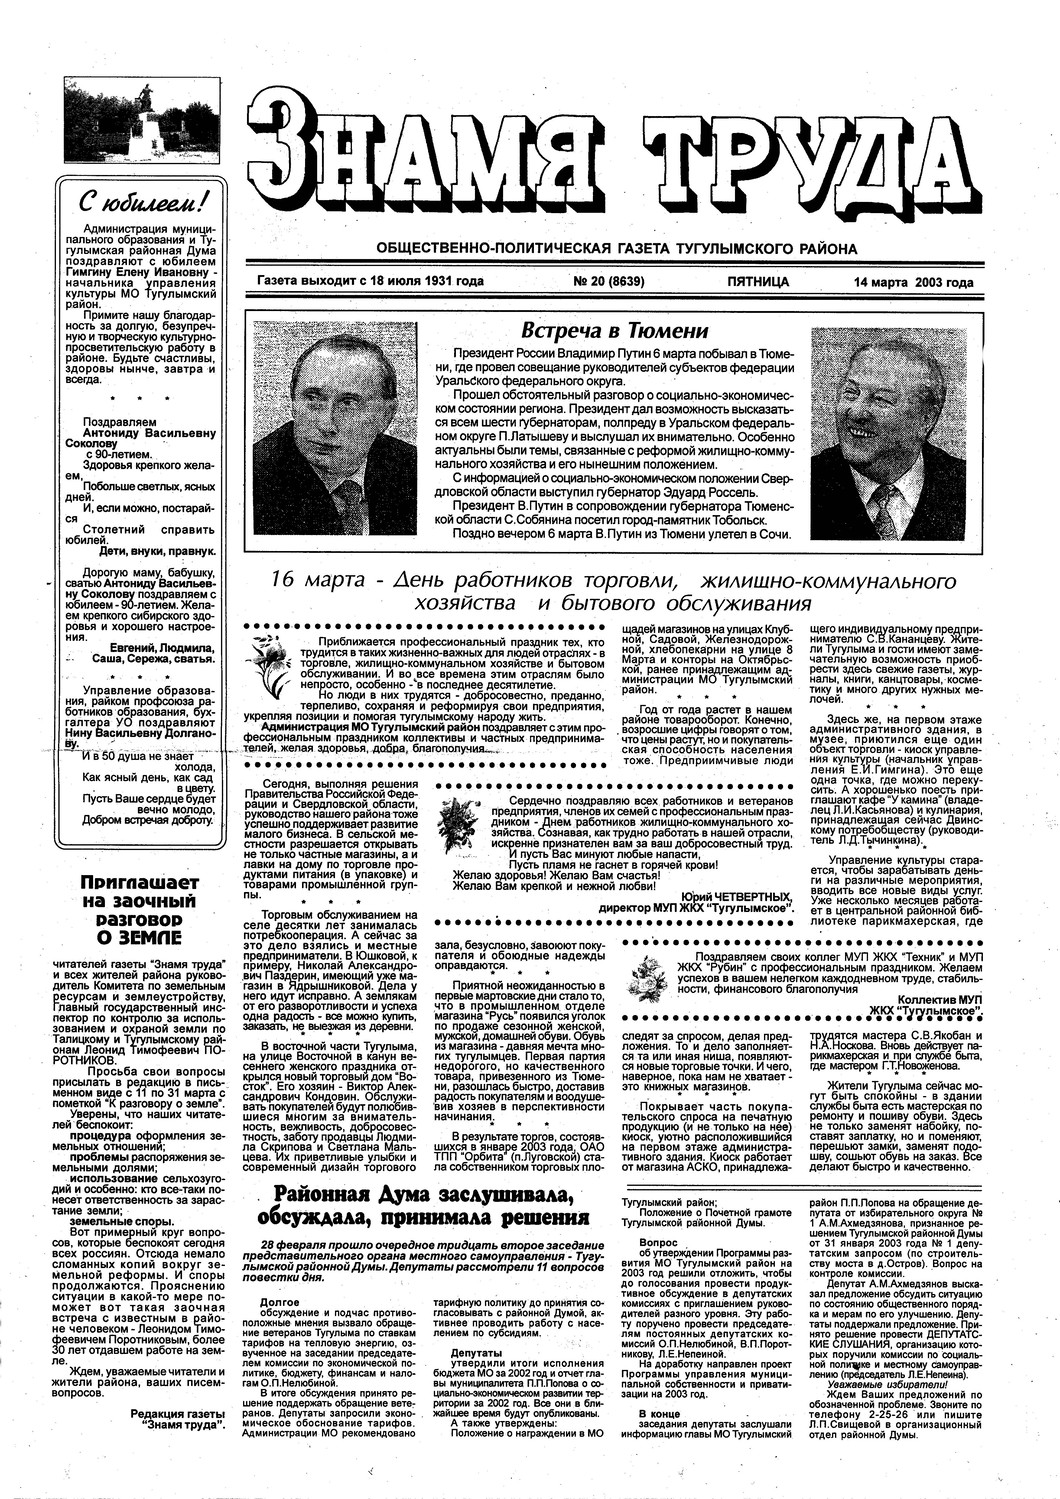 Знамя труда №20 от 14 марта 2003г.